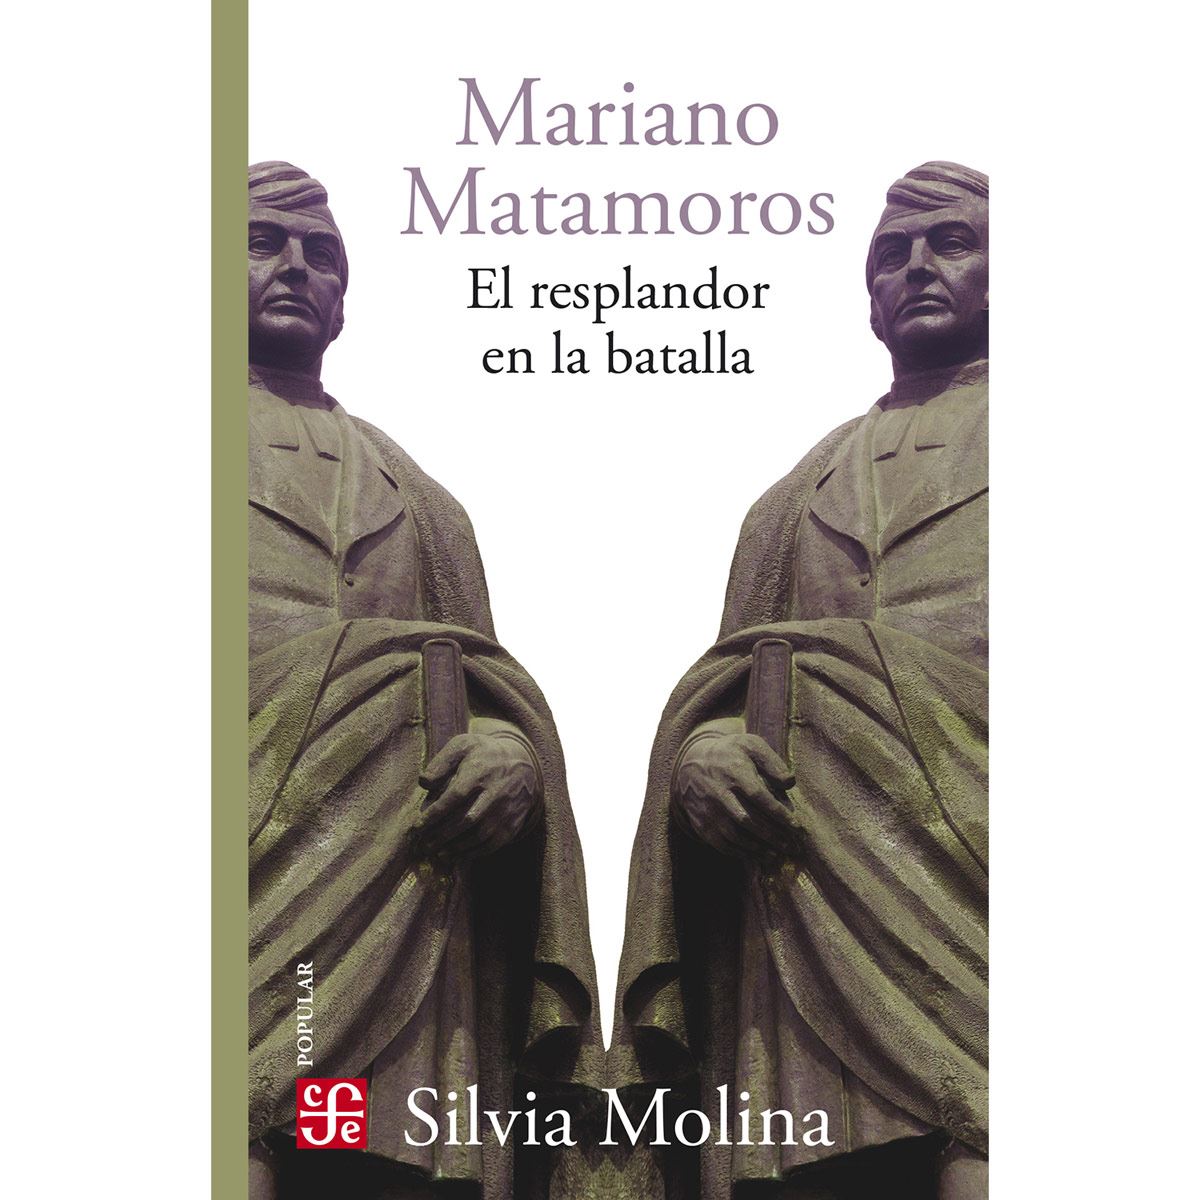 Mariano Matamoros. El resplandor en la batalla